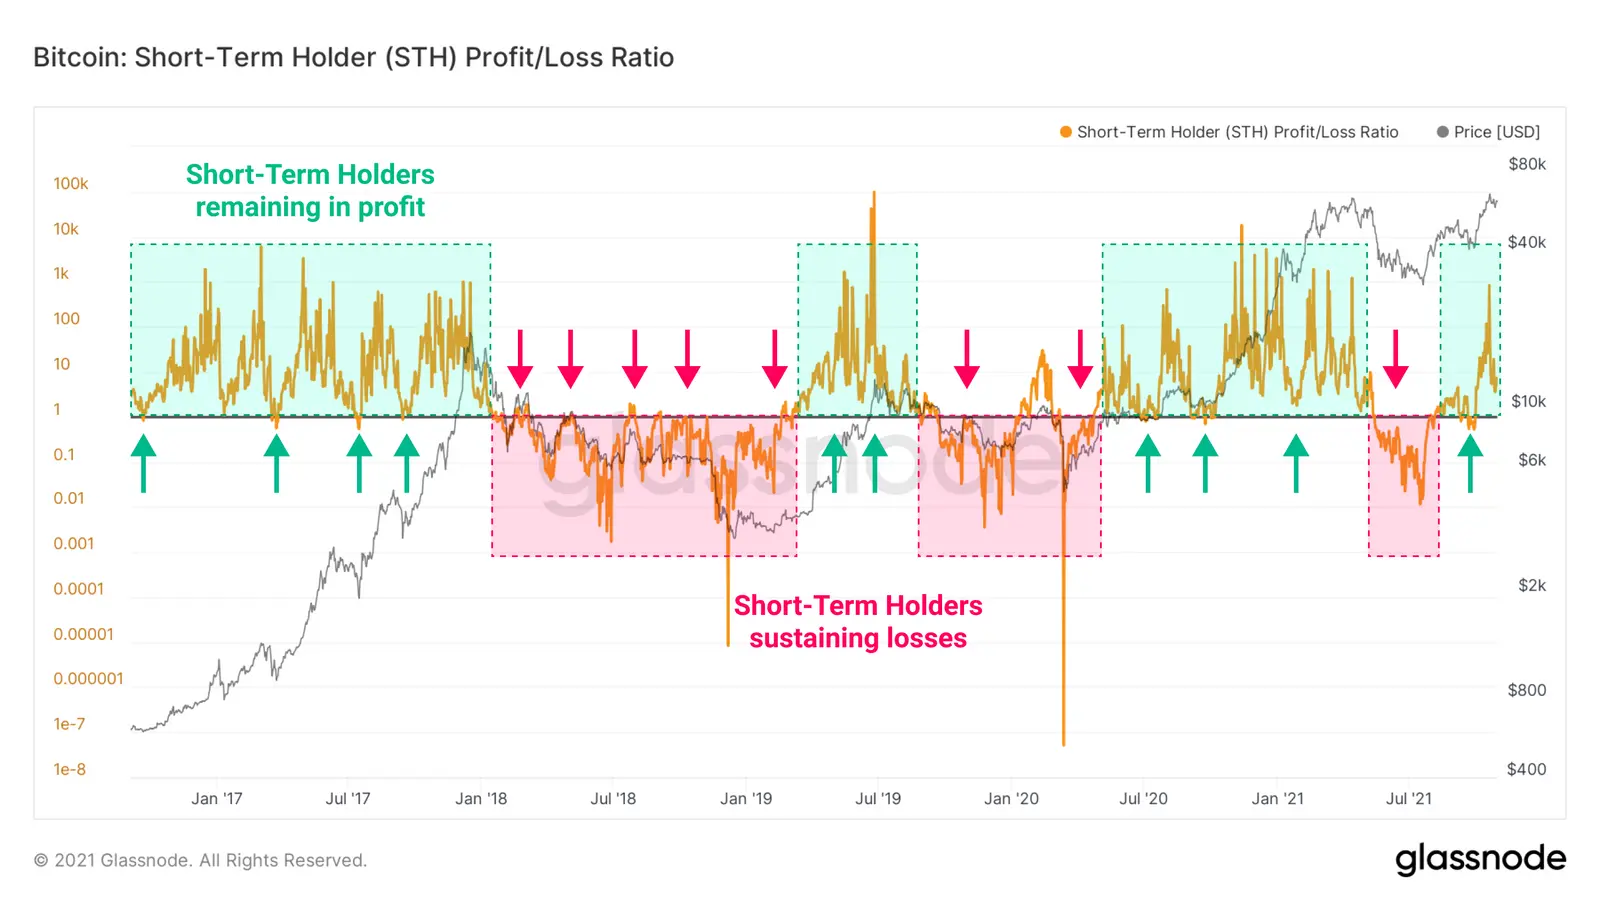 Profit/Verlust-Verhältnis für Kurzzeitinvestoren in Bitcoin